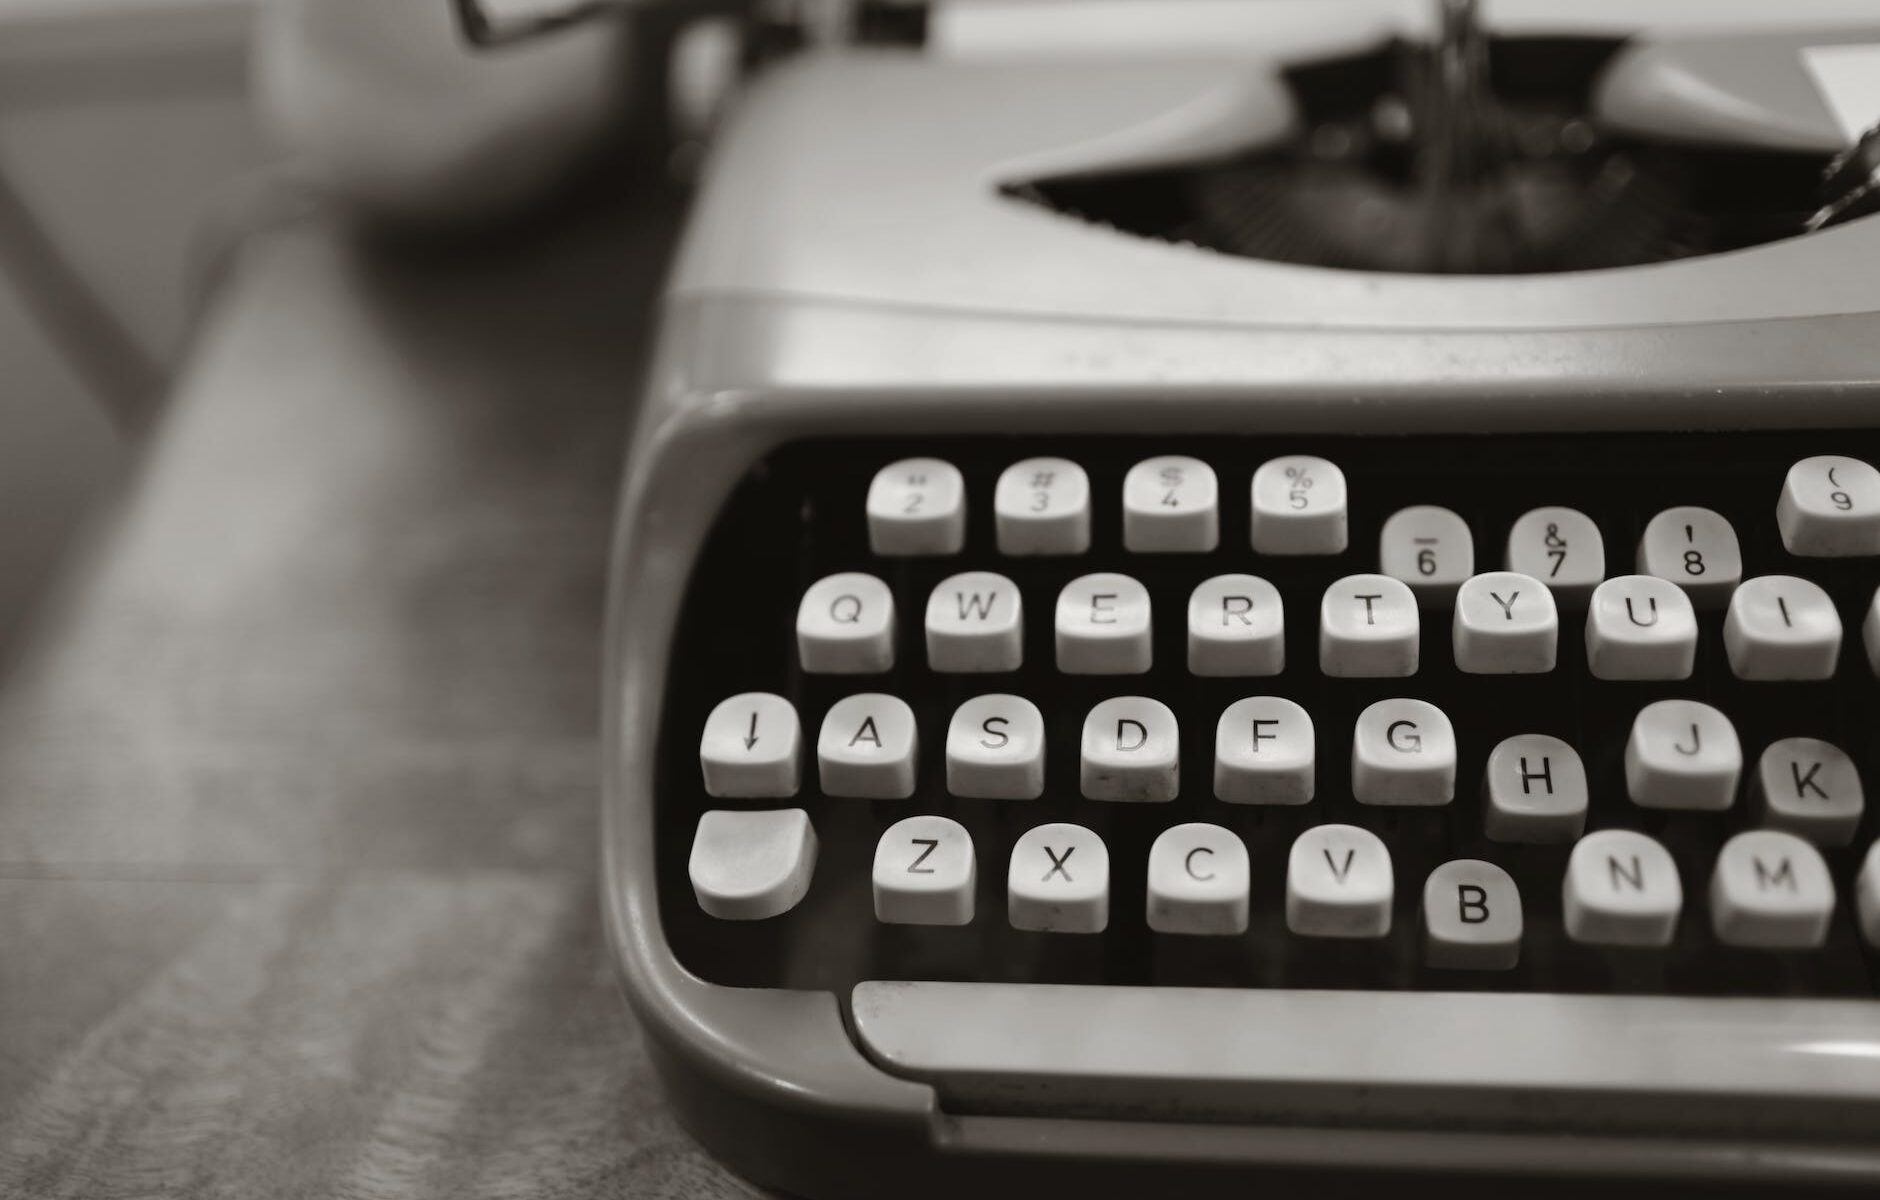 close up photo of gray typewriter